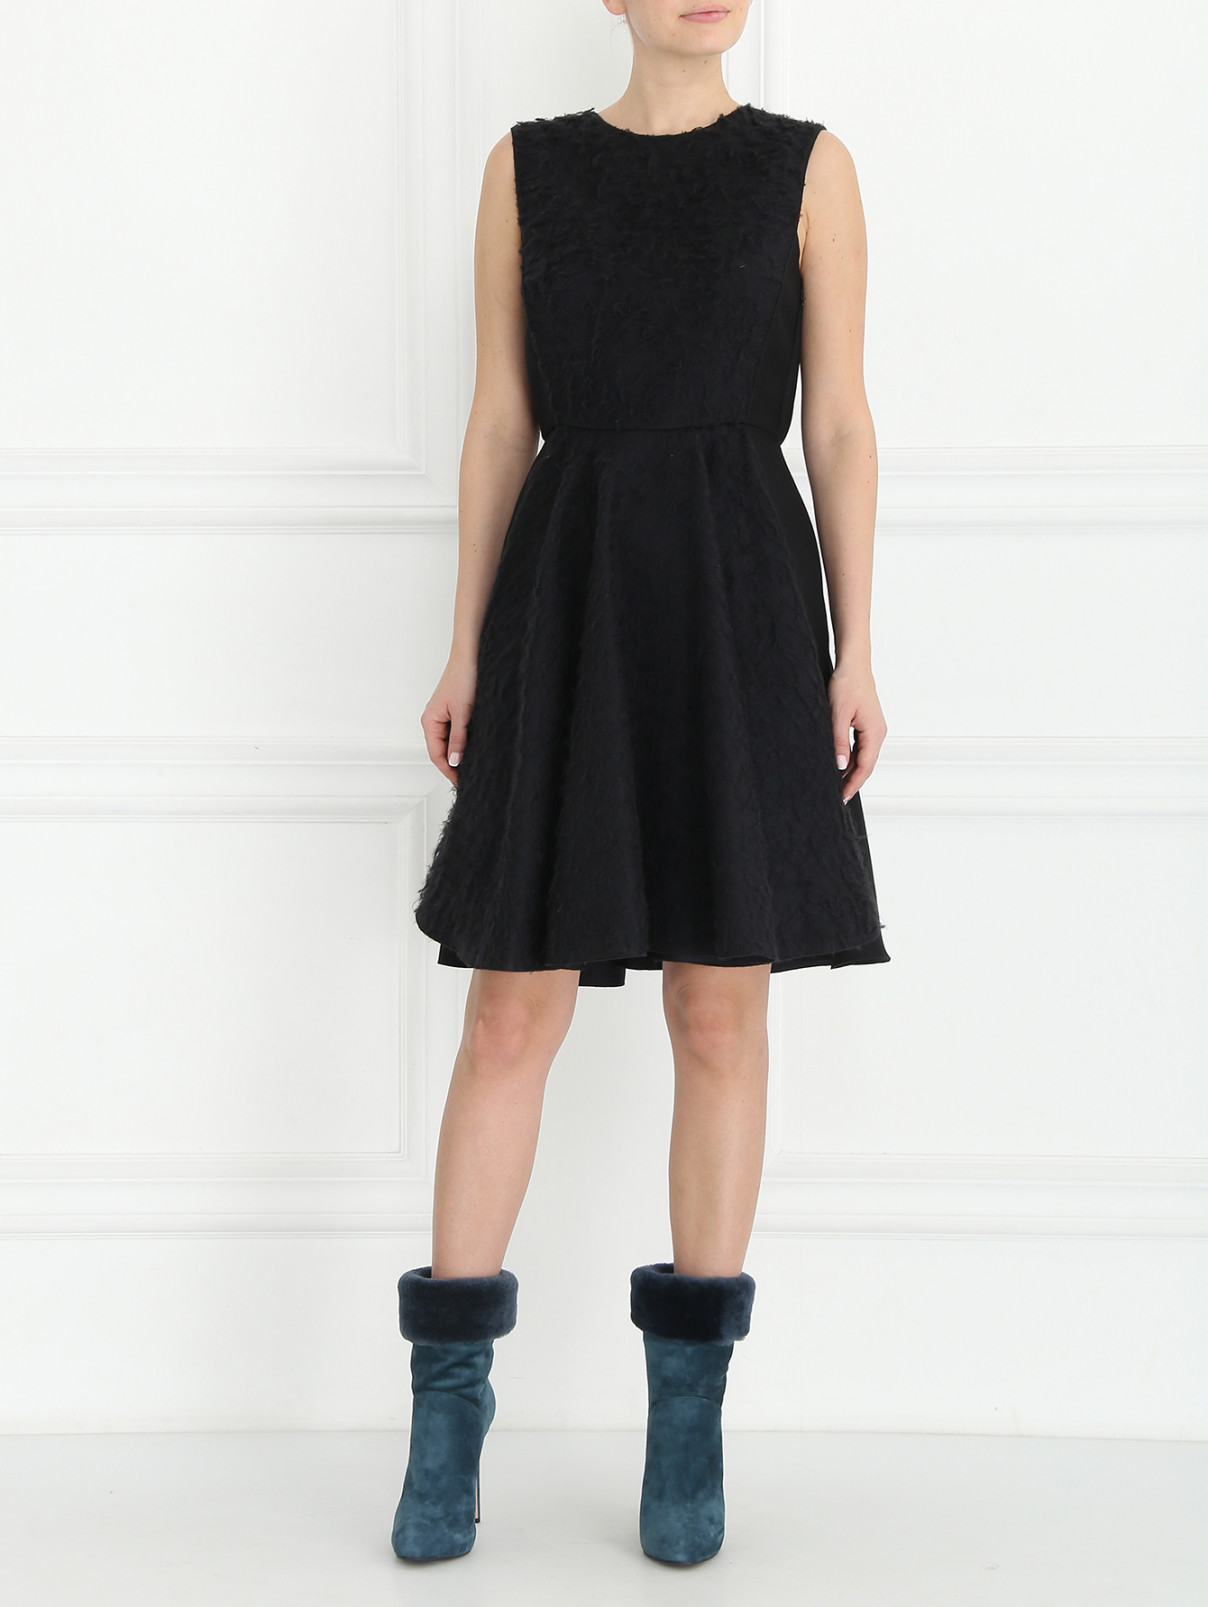 Платье-миди из шерсти и шелка Giambattista Valli  –  Модель Общий вид  – Цвет:  Черный